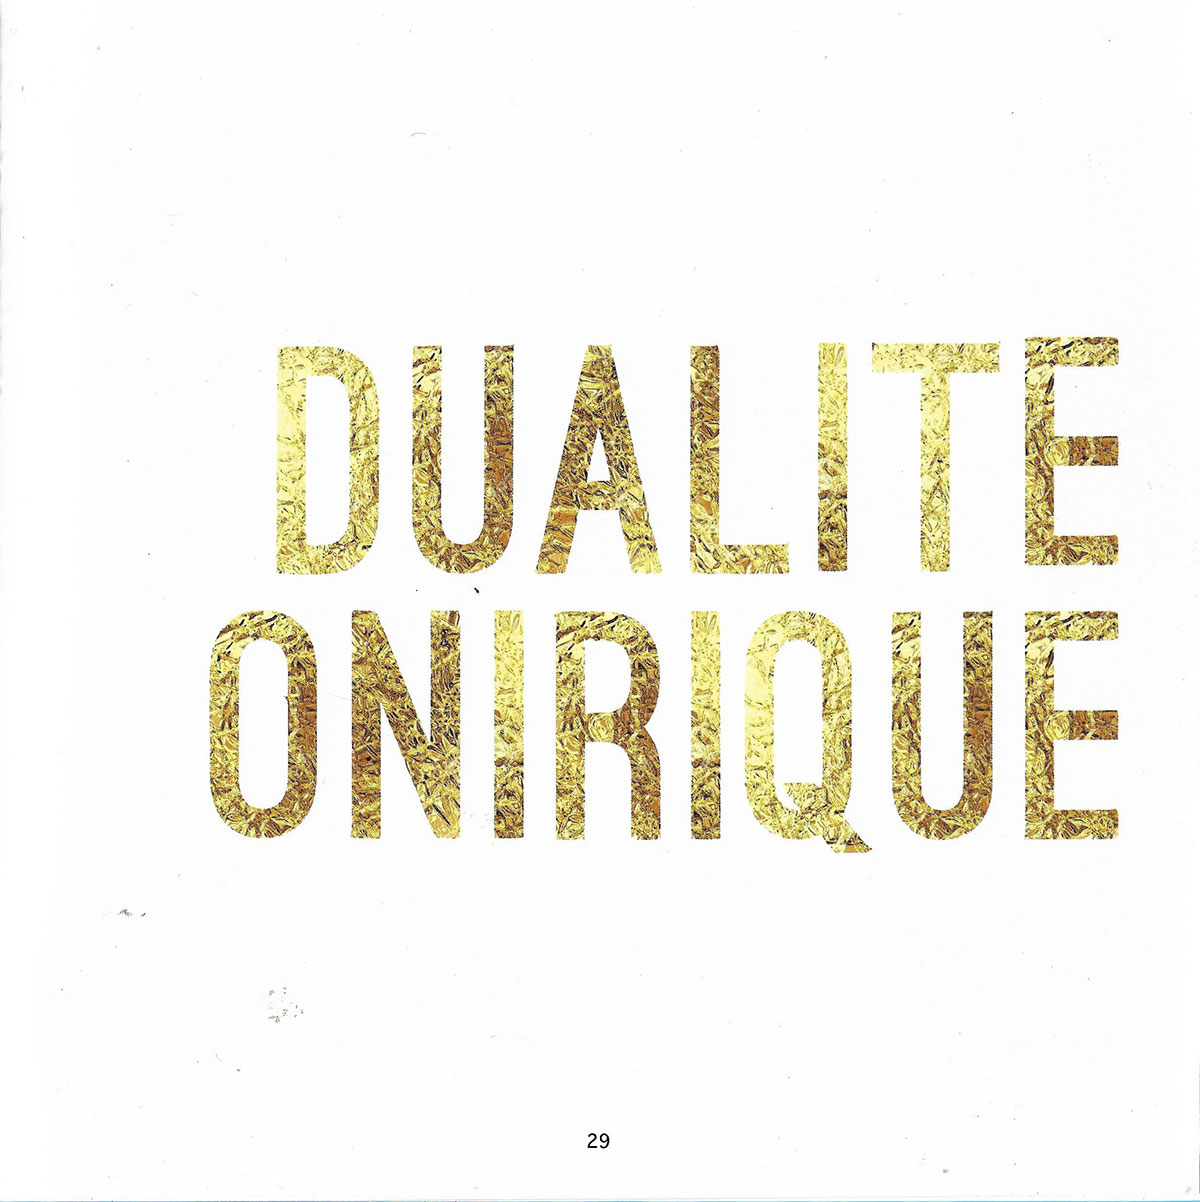 "Dualité onirique", Anaïs Raulet, Au fil de songes, MAACASSO (art book for benefit of UNICEF), March 20, 2017